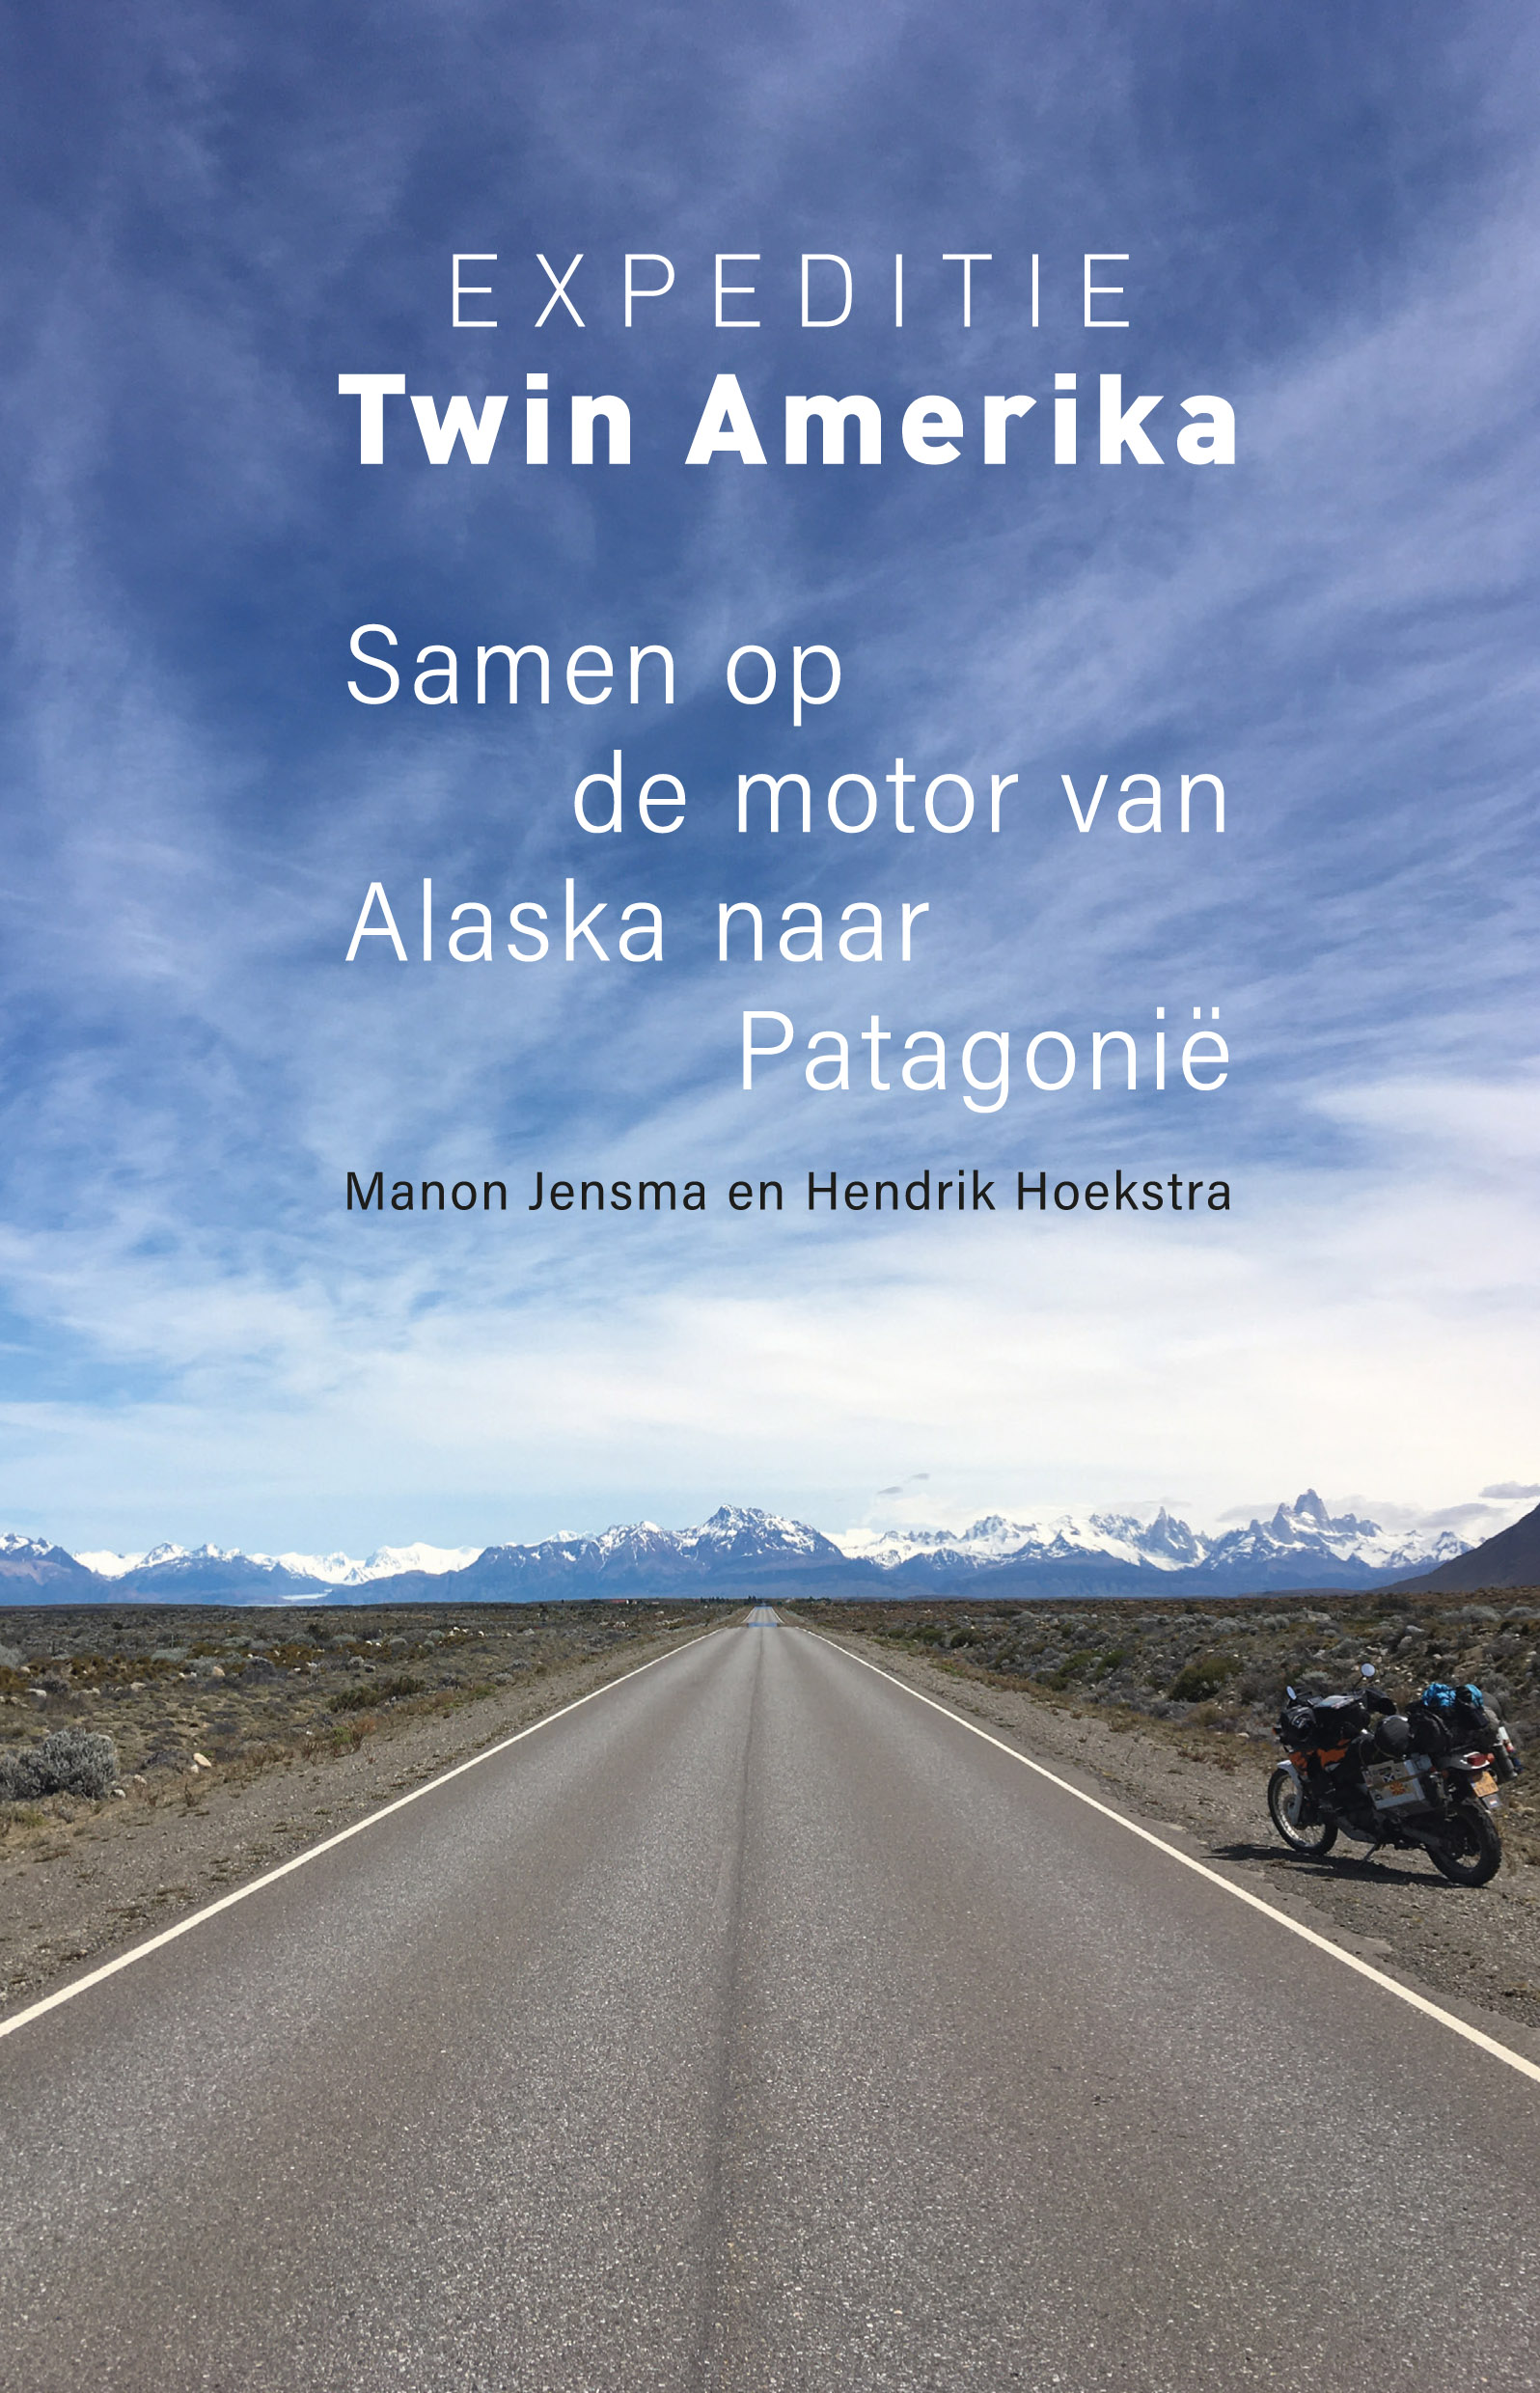 Expeditie Twin Amerika | reisverhaal 9789493170445 Hendrik Hoekstra en Manon Jensma Kleine Uil   Motorsport, Reisverhalen Wereld als geheel